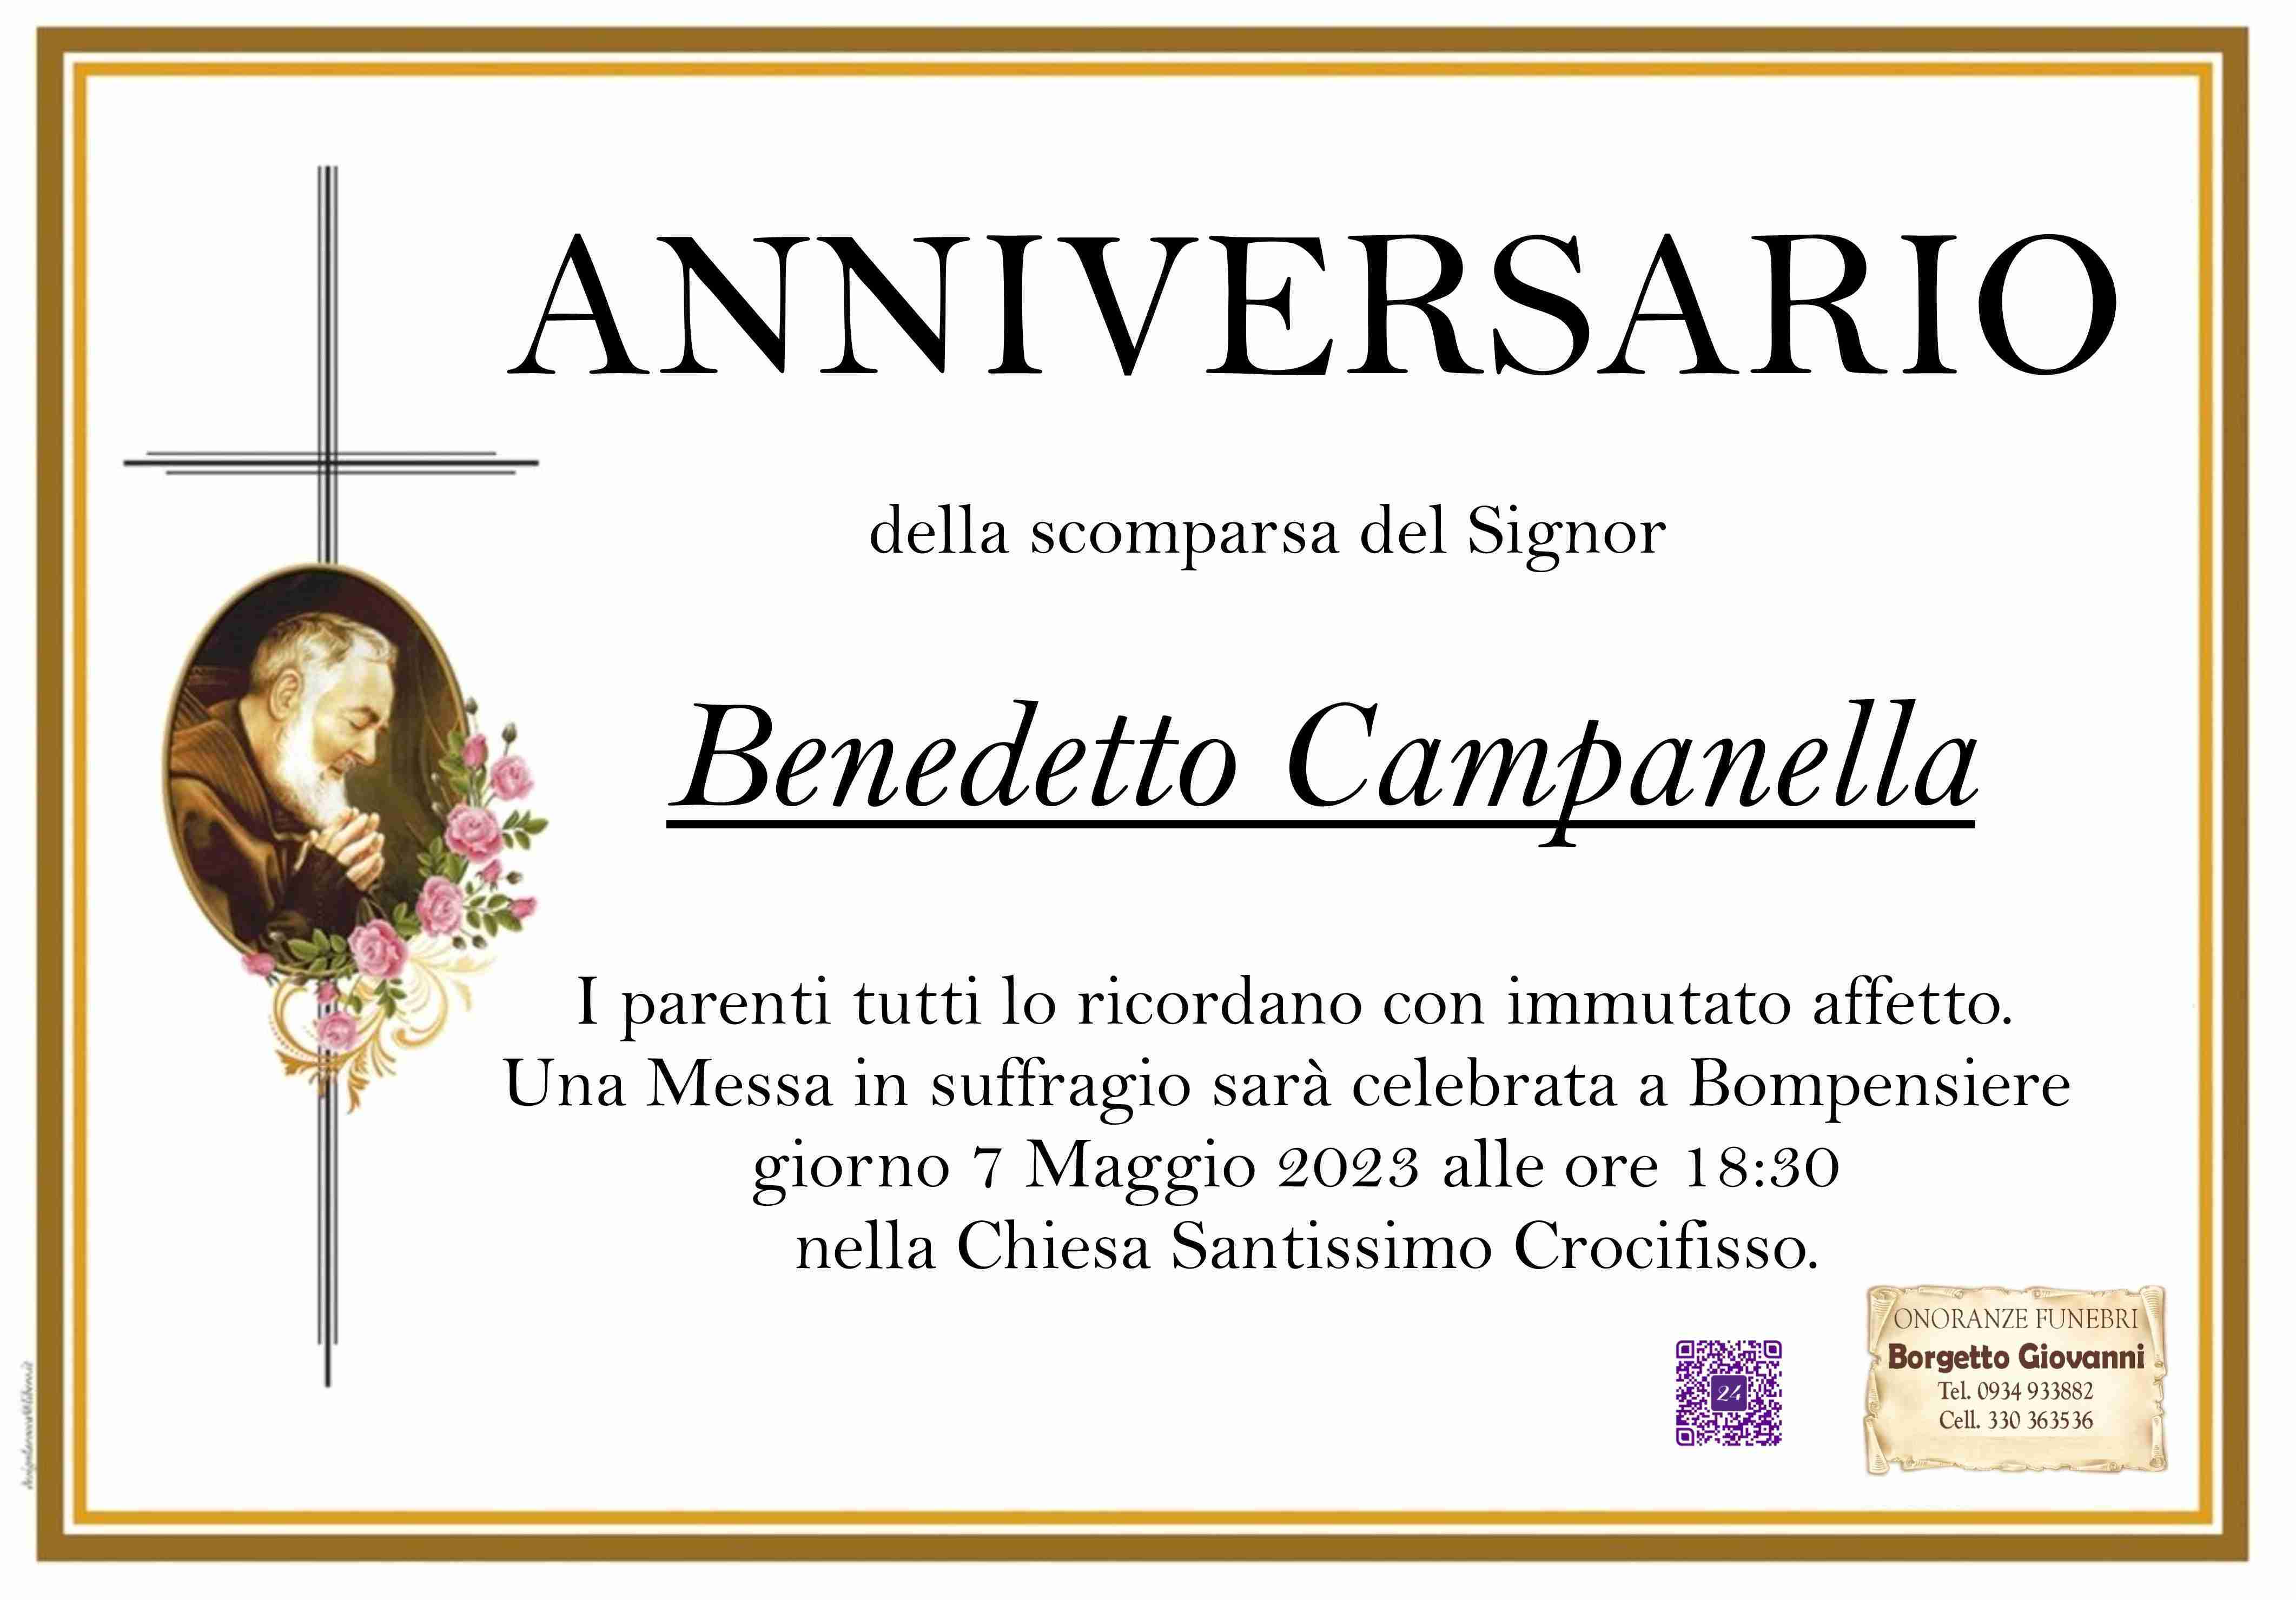 Benedetto Campanella